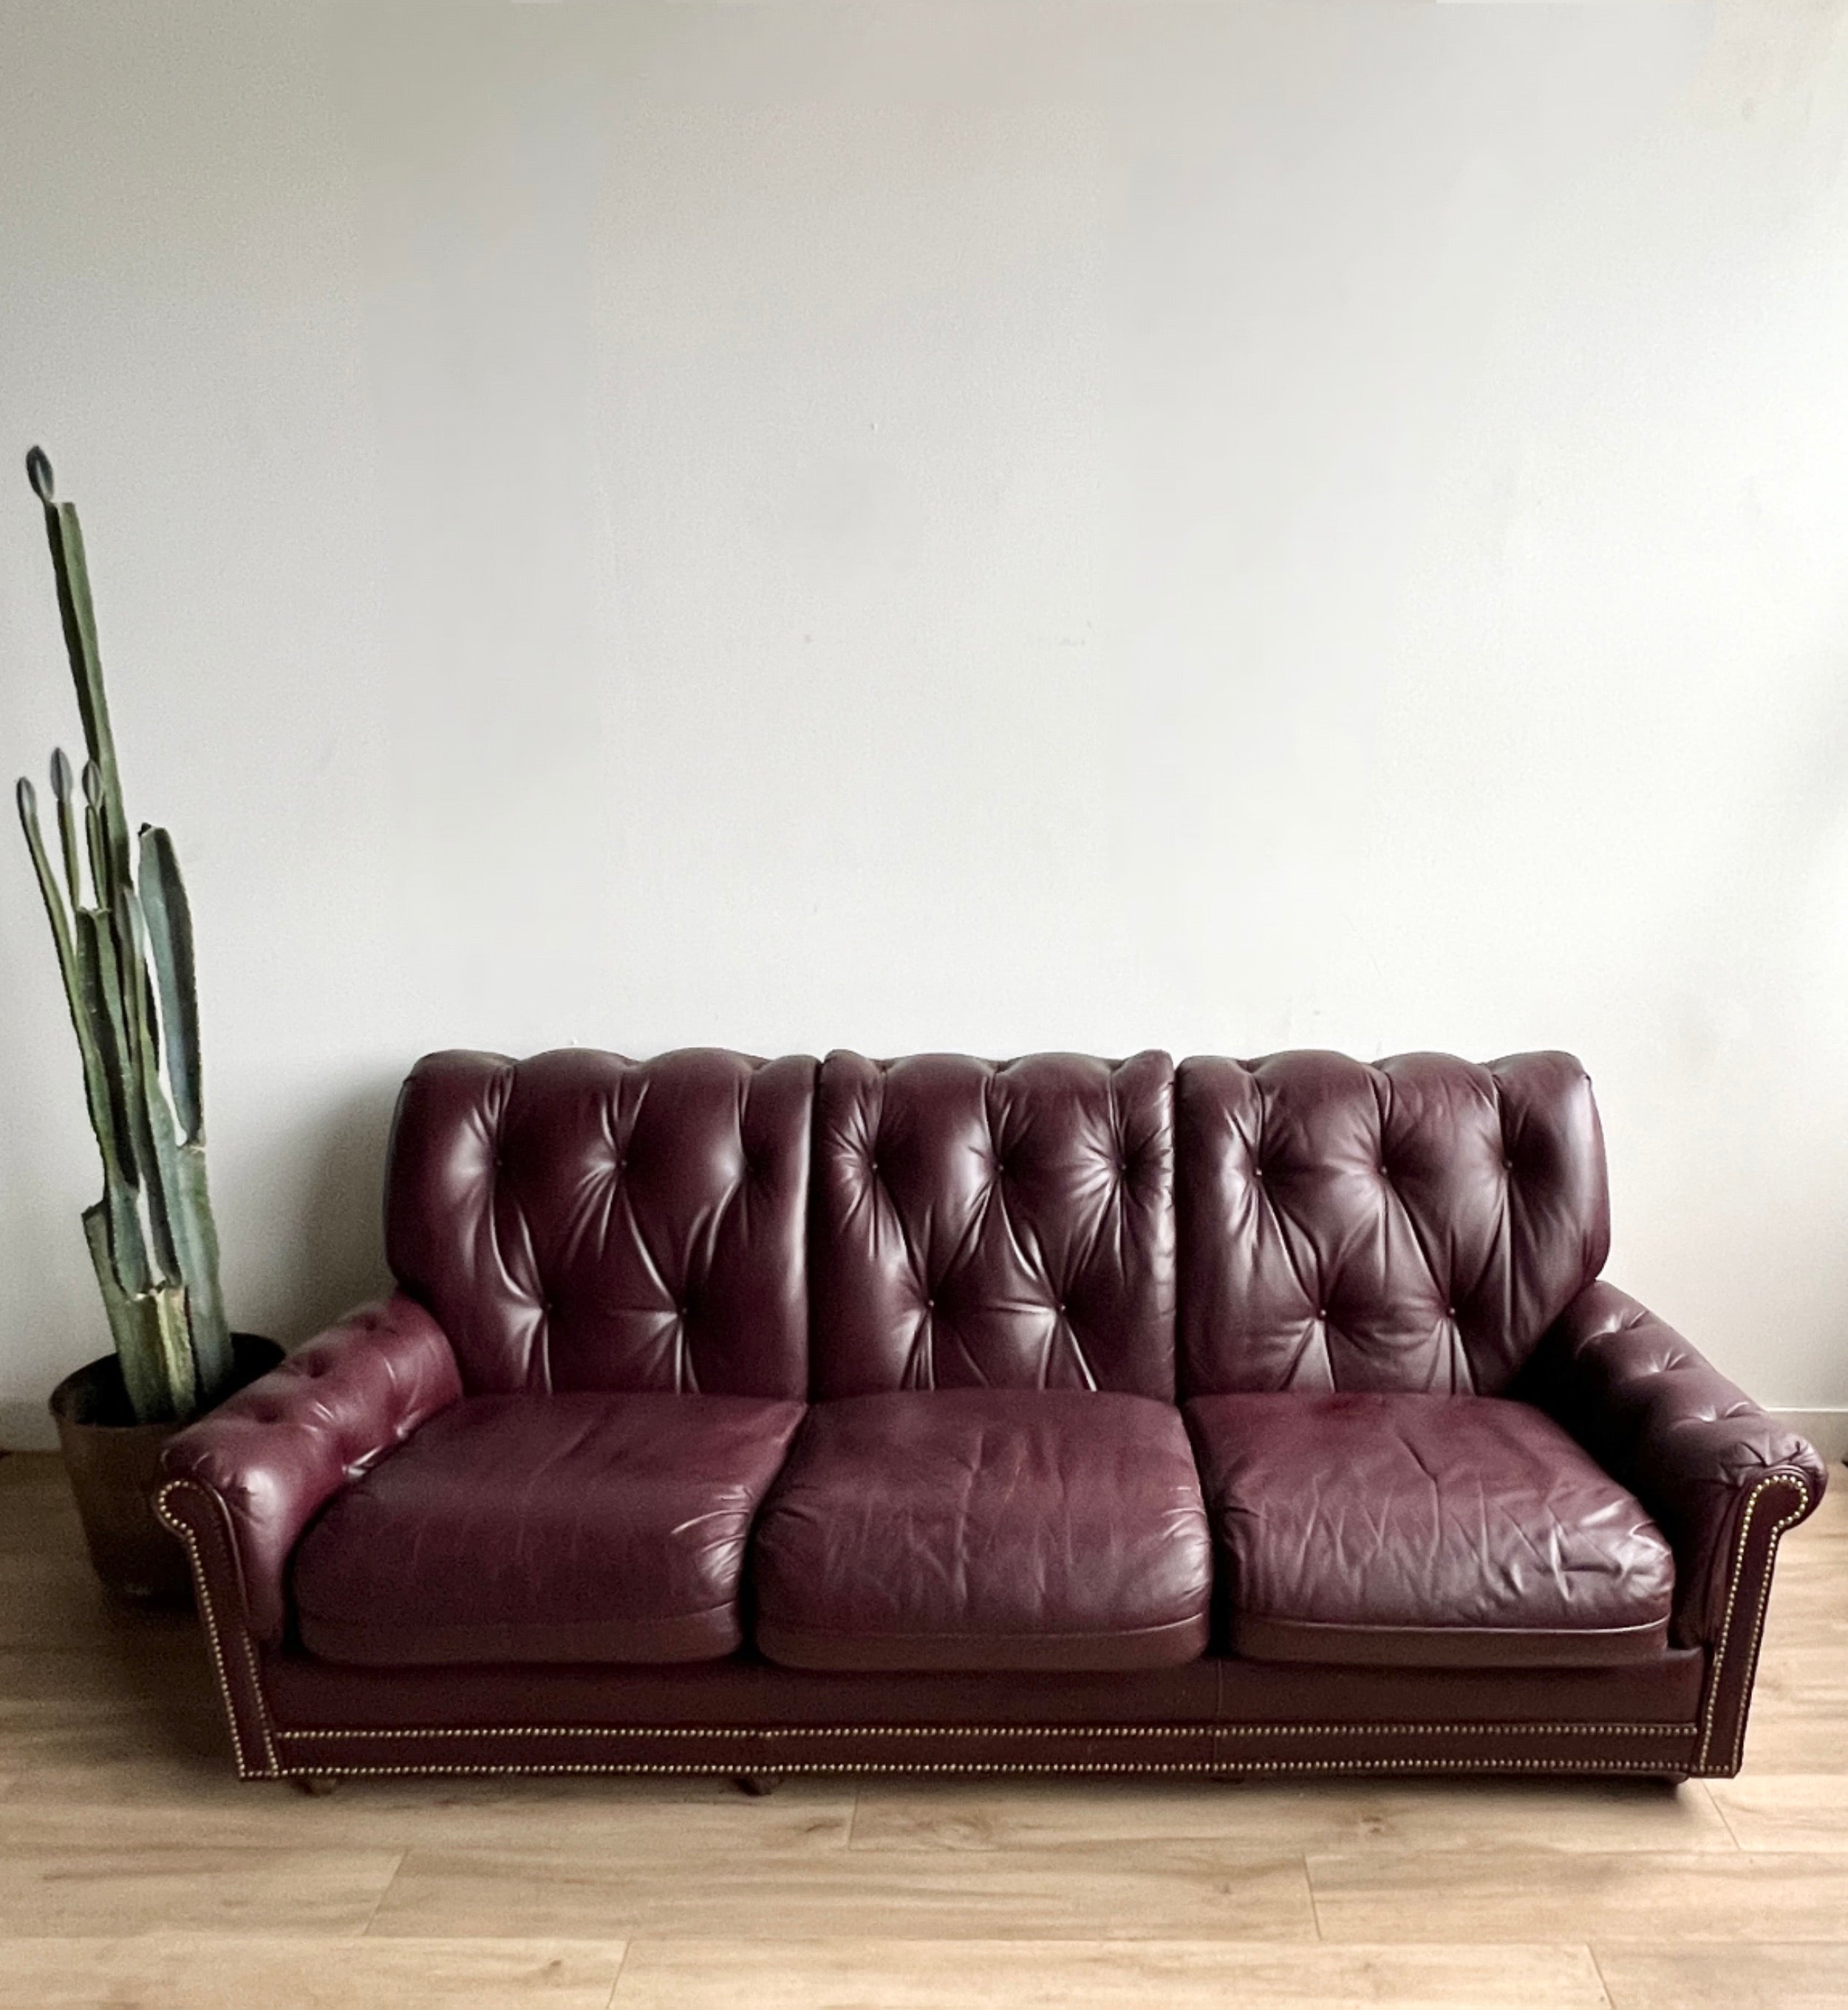 Vintage Tufted Leather Sofa